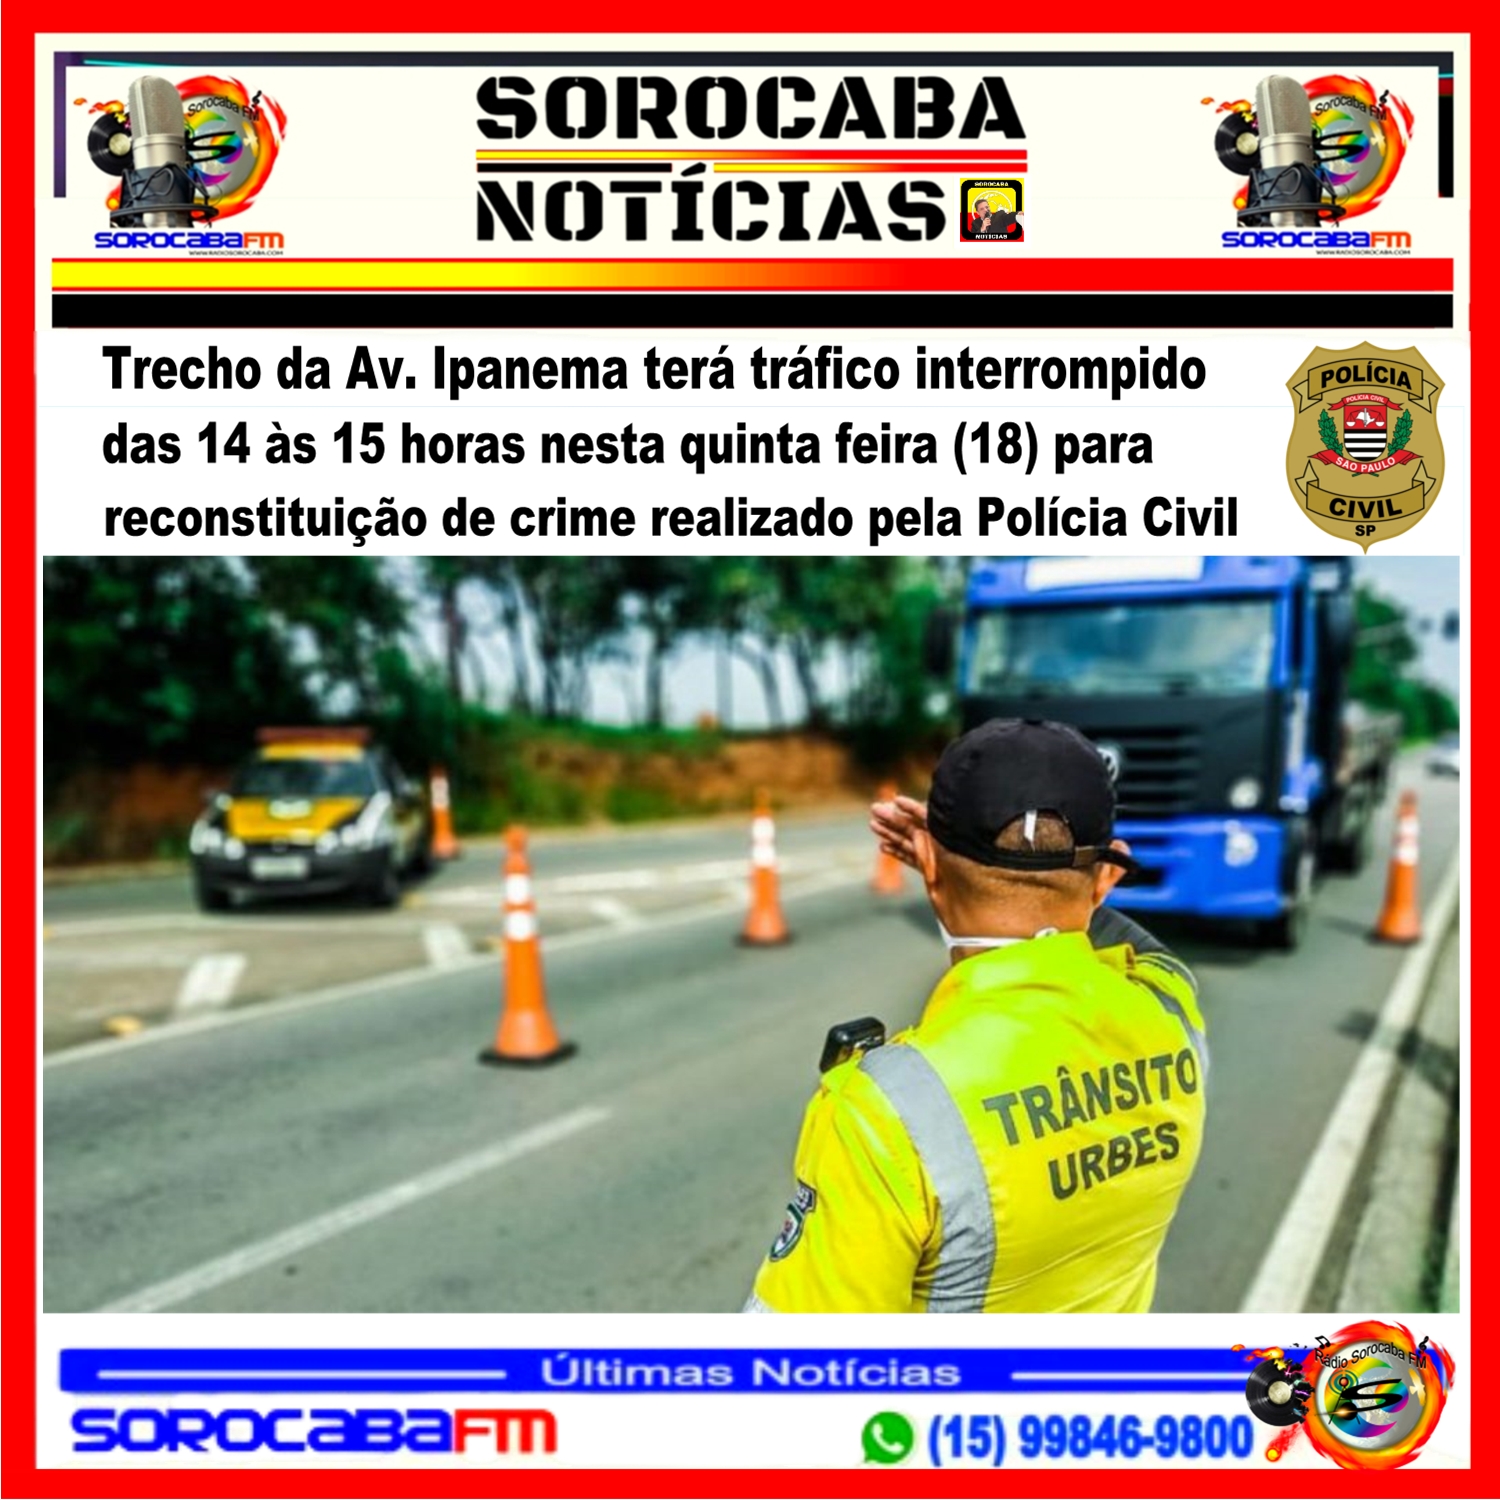 Trecho da Av. Ipanema terá tráfico interrompido das 14 às 15 horas nesta quinta feira (18) para reconstituição de crime realizado pela Polícia Civil